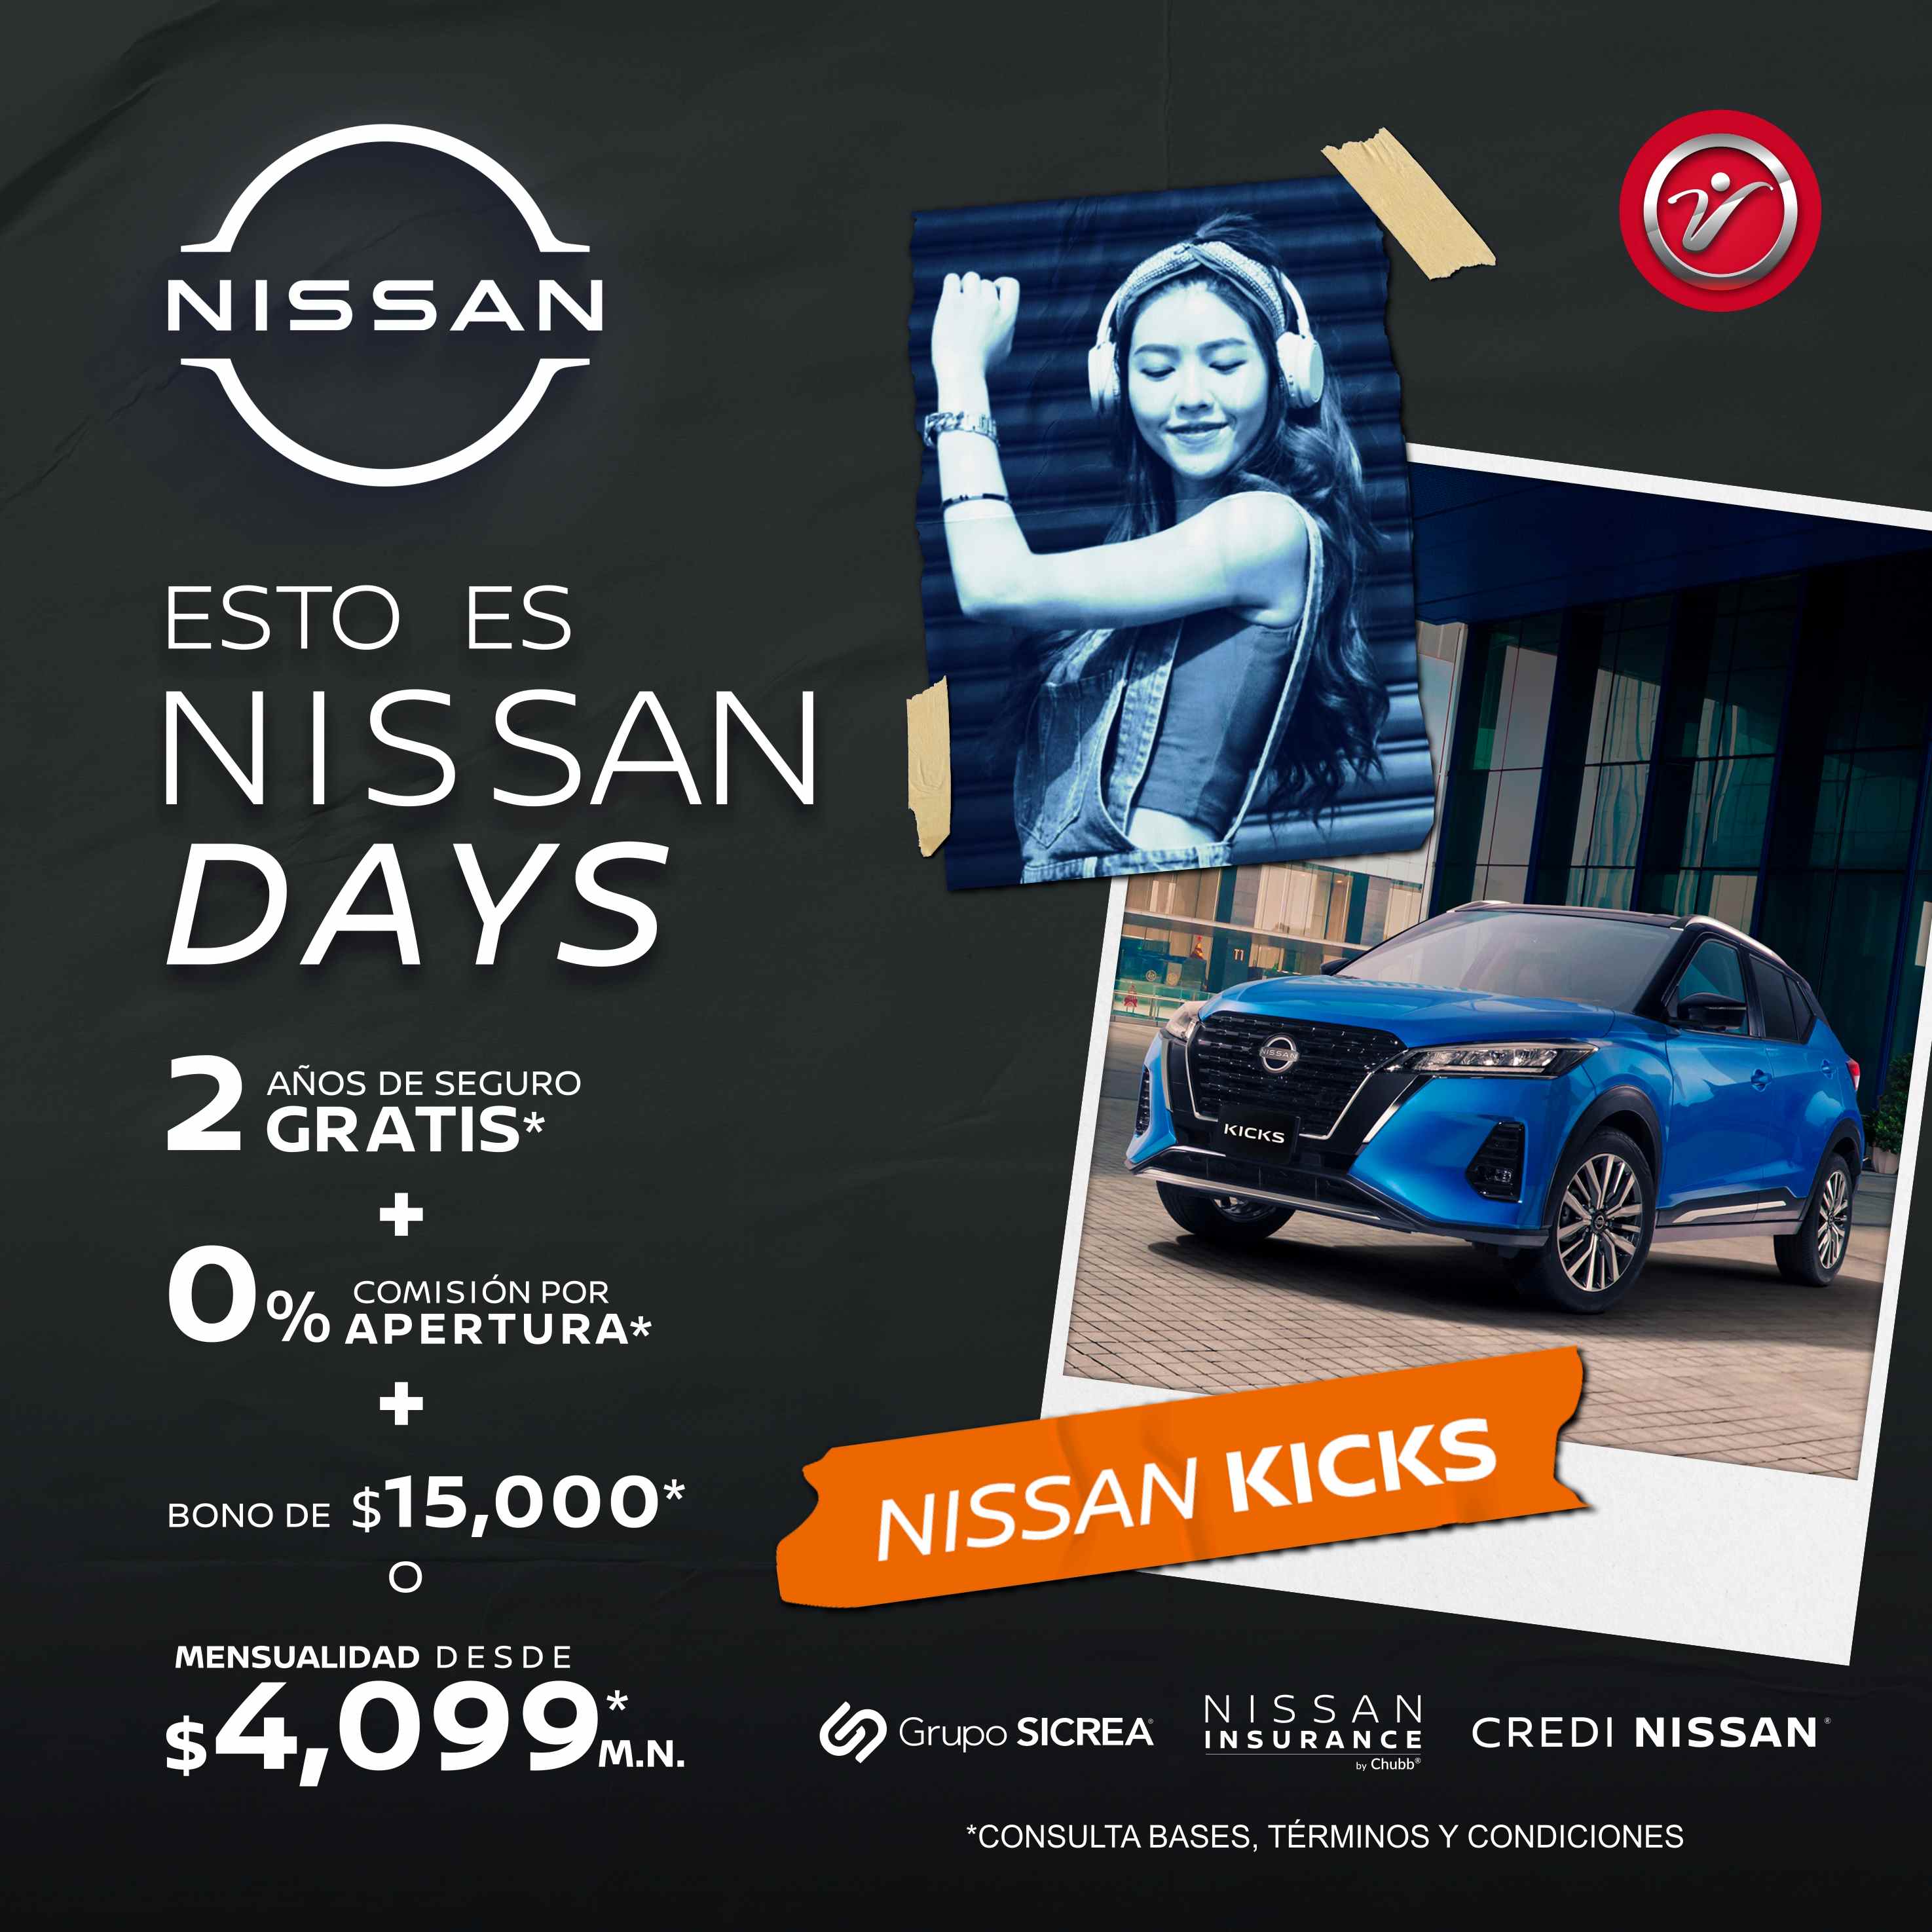 Esto es Nissan Days